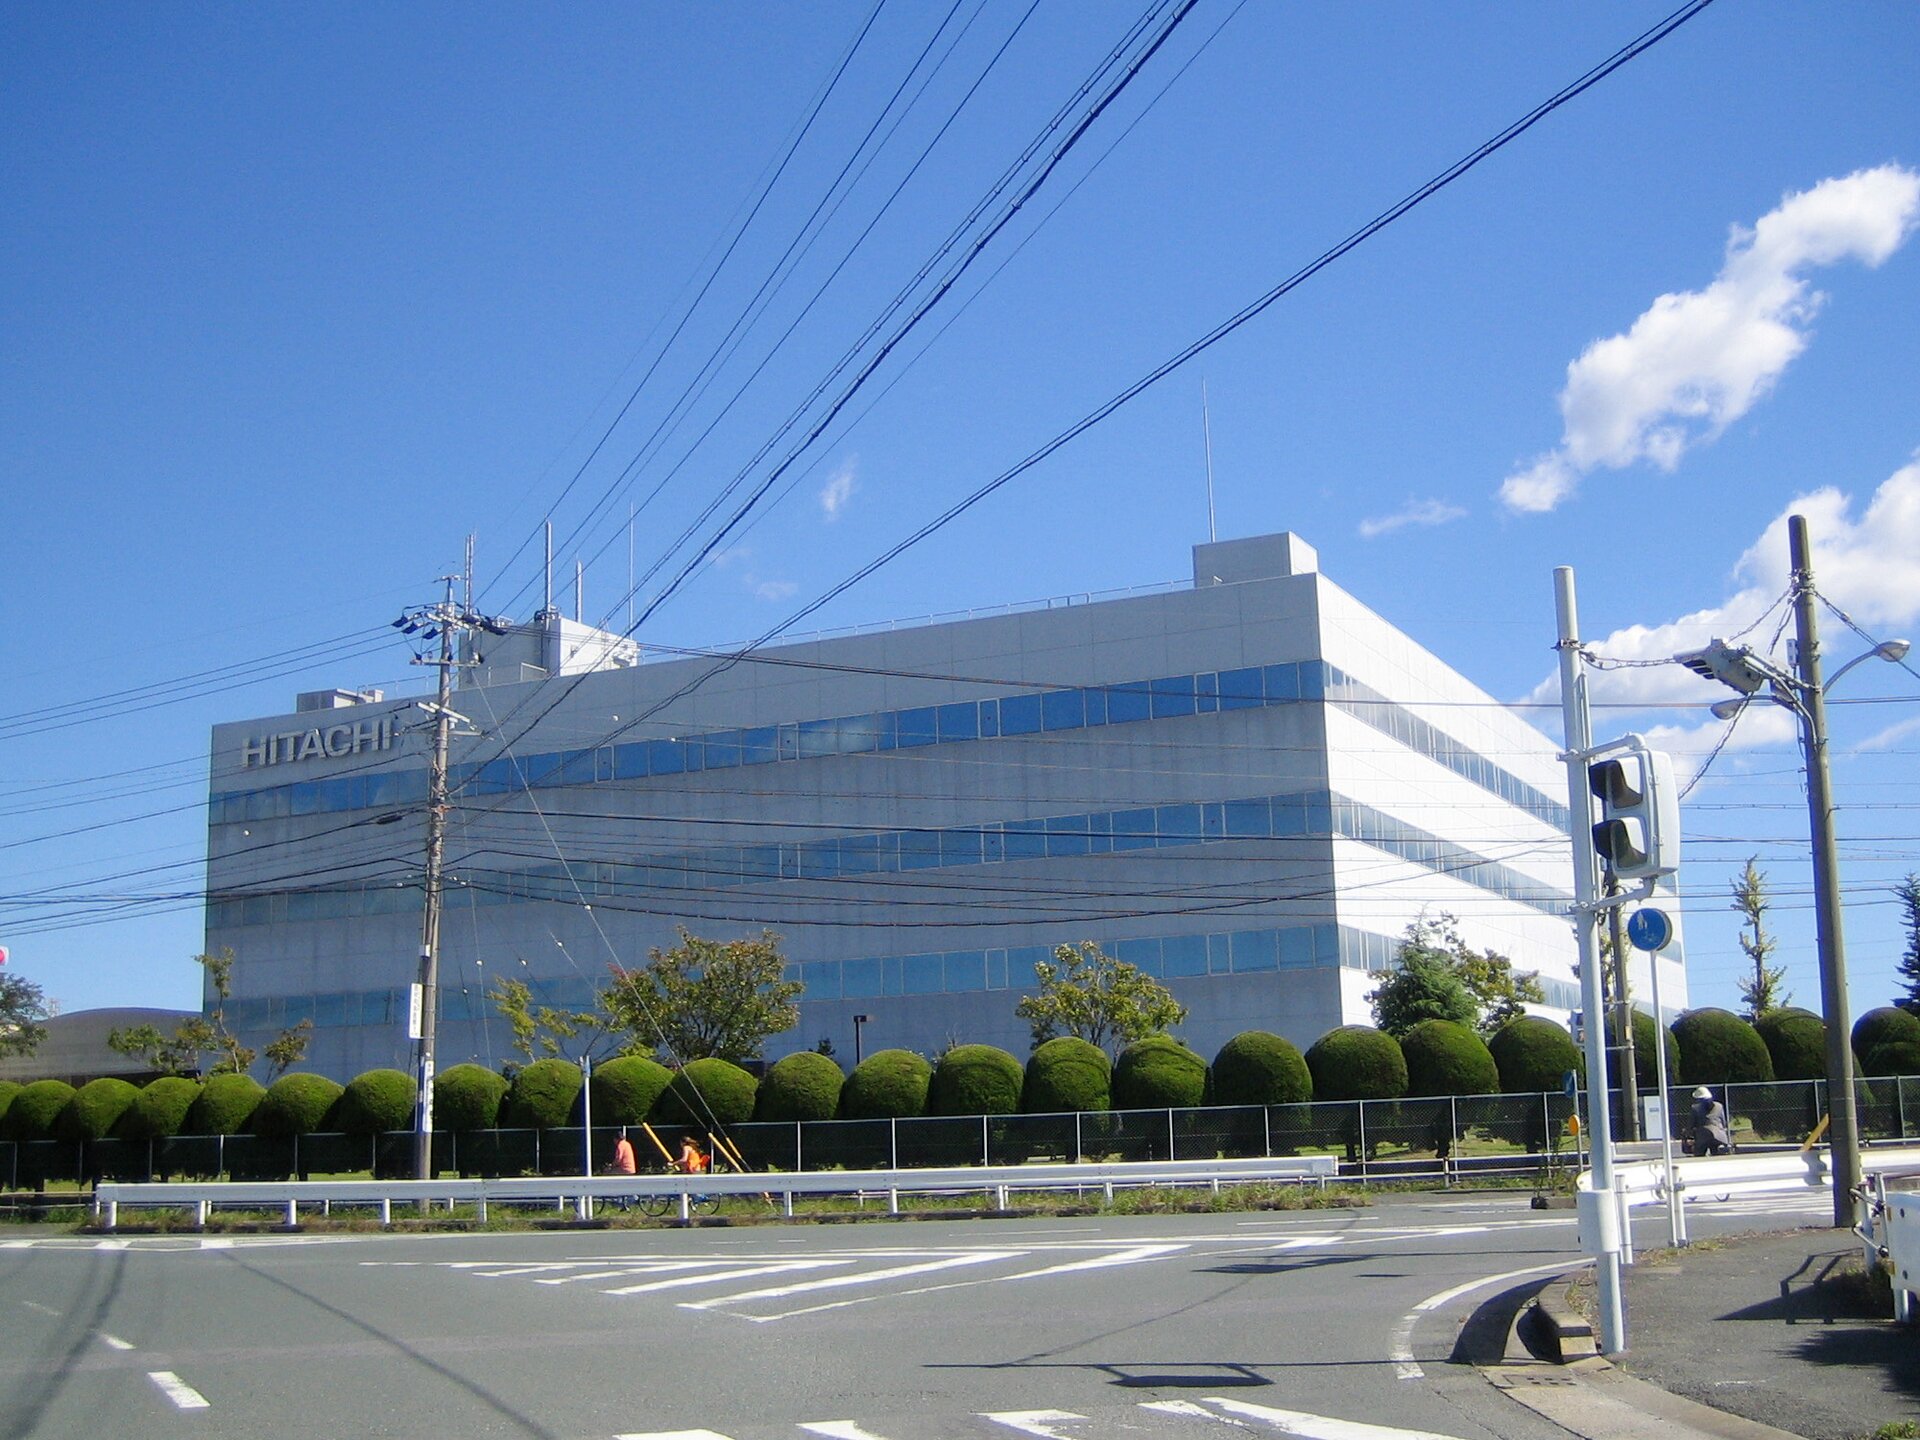 Jedna z wielu fabryk japońskiego koncernu Hitachi produkującego sprzęt elektroniczny, elektrotechniczny, telekomunikacyjny, budowlany i in.